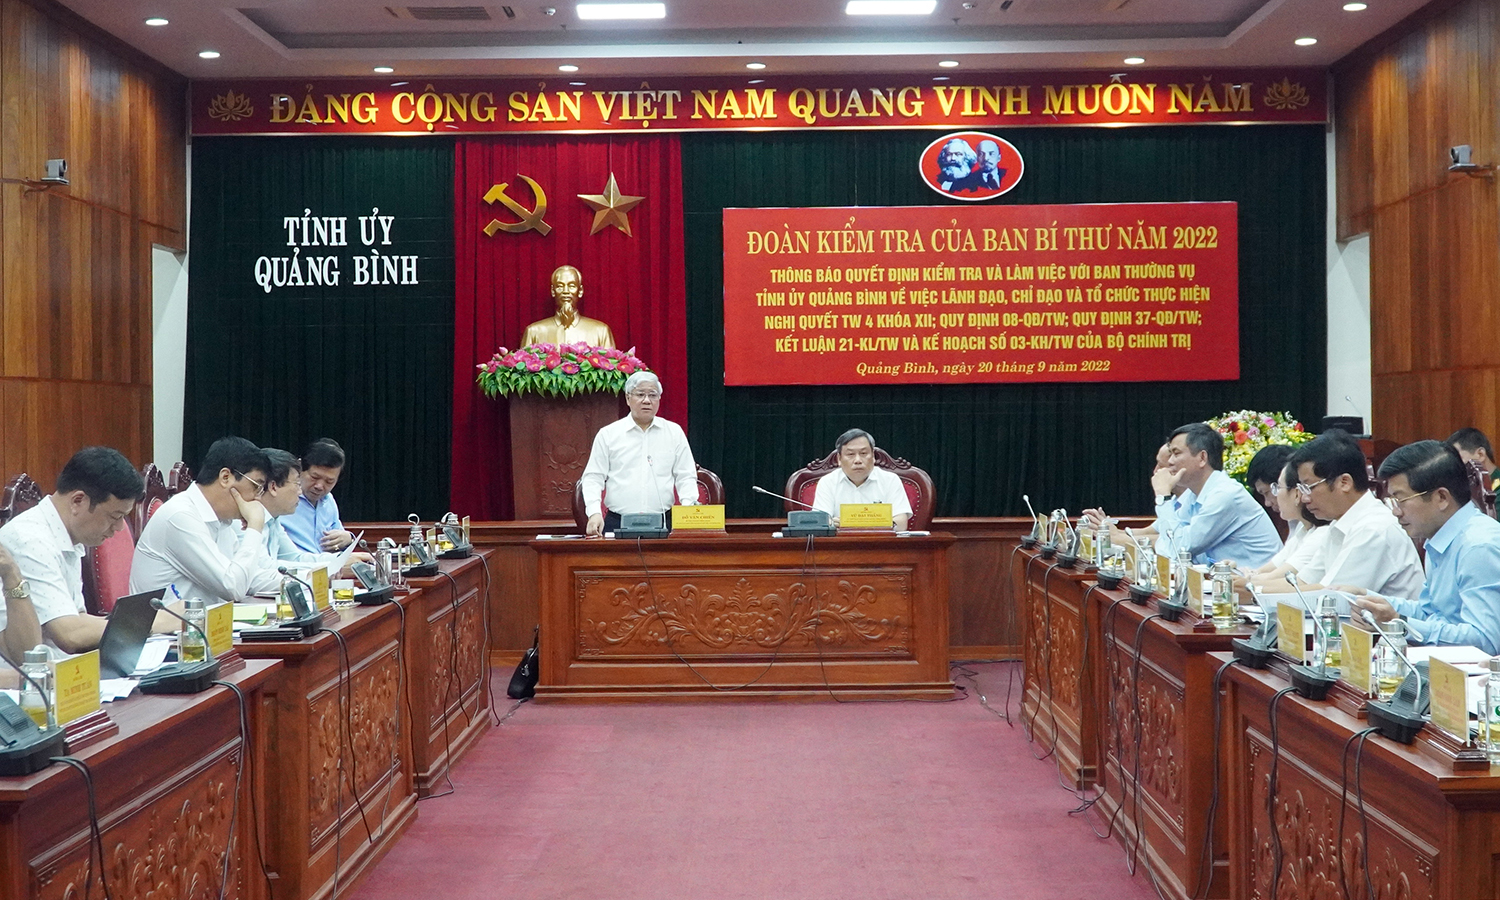 Đoàn kiểm tra 545 của Ban Bí thư Trung ương Đảng làm việc với Ban Thường vụ Tỉnh ủy Quảng Bình